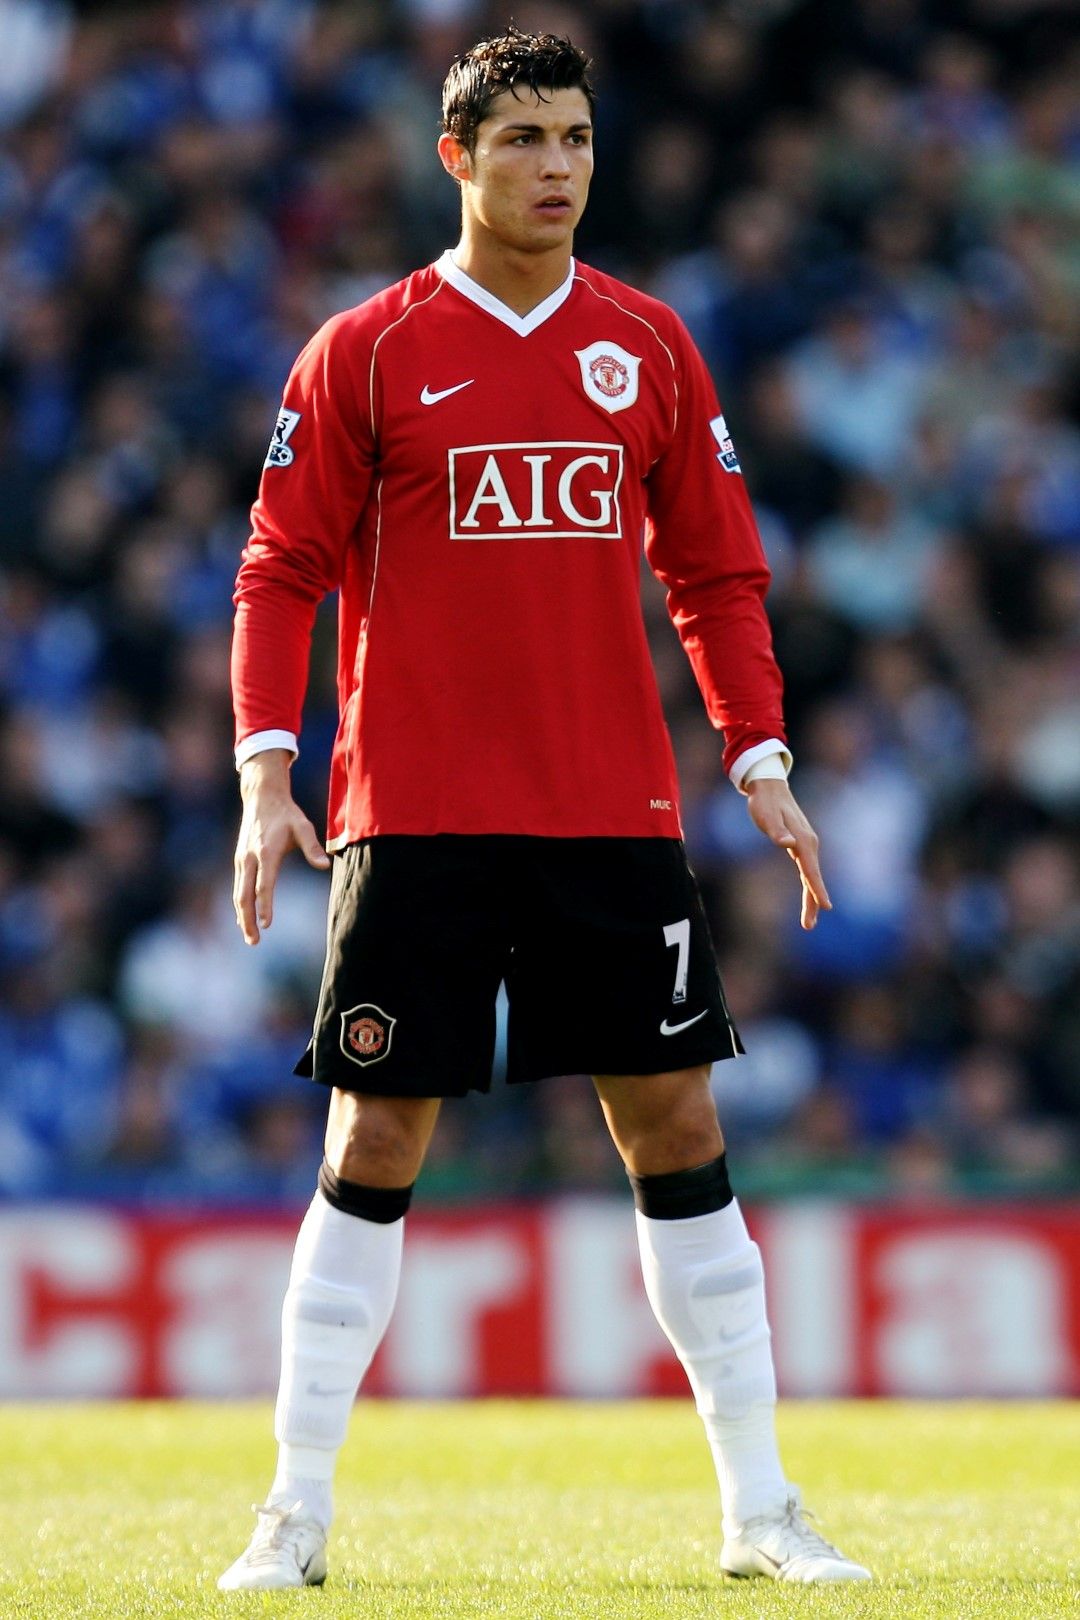 2006 г. Титлата отново се изплъзва от "Юнайтед", но Кристиано вече е основен играч и лидер. Завършва сезон 2005/2006 г. с 12 гола във всички турнири.